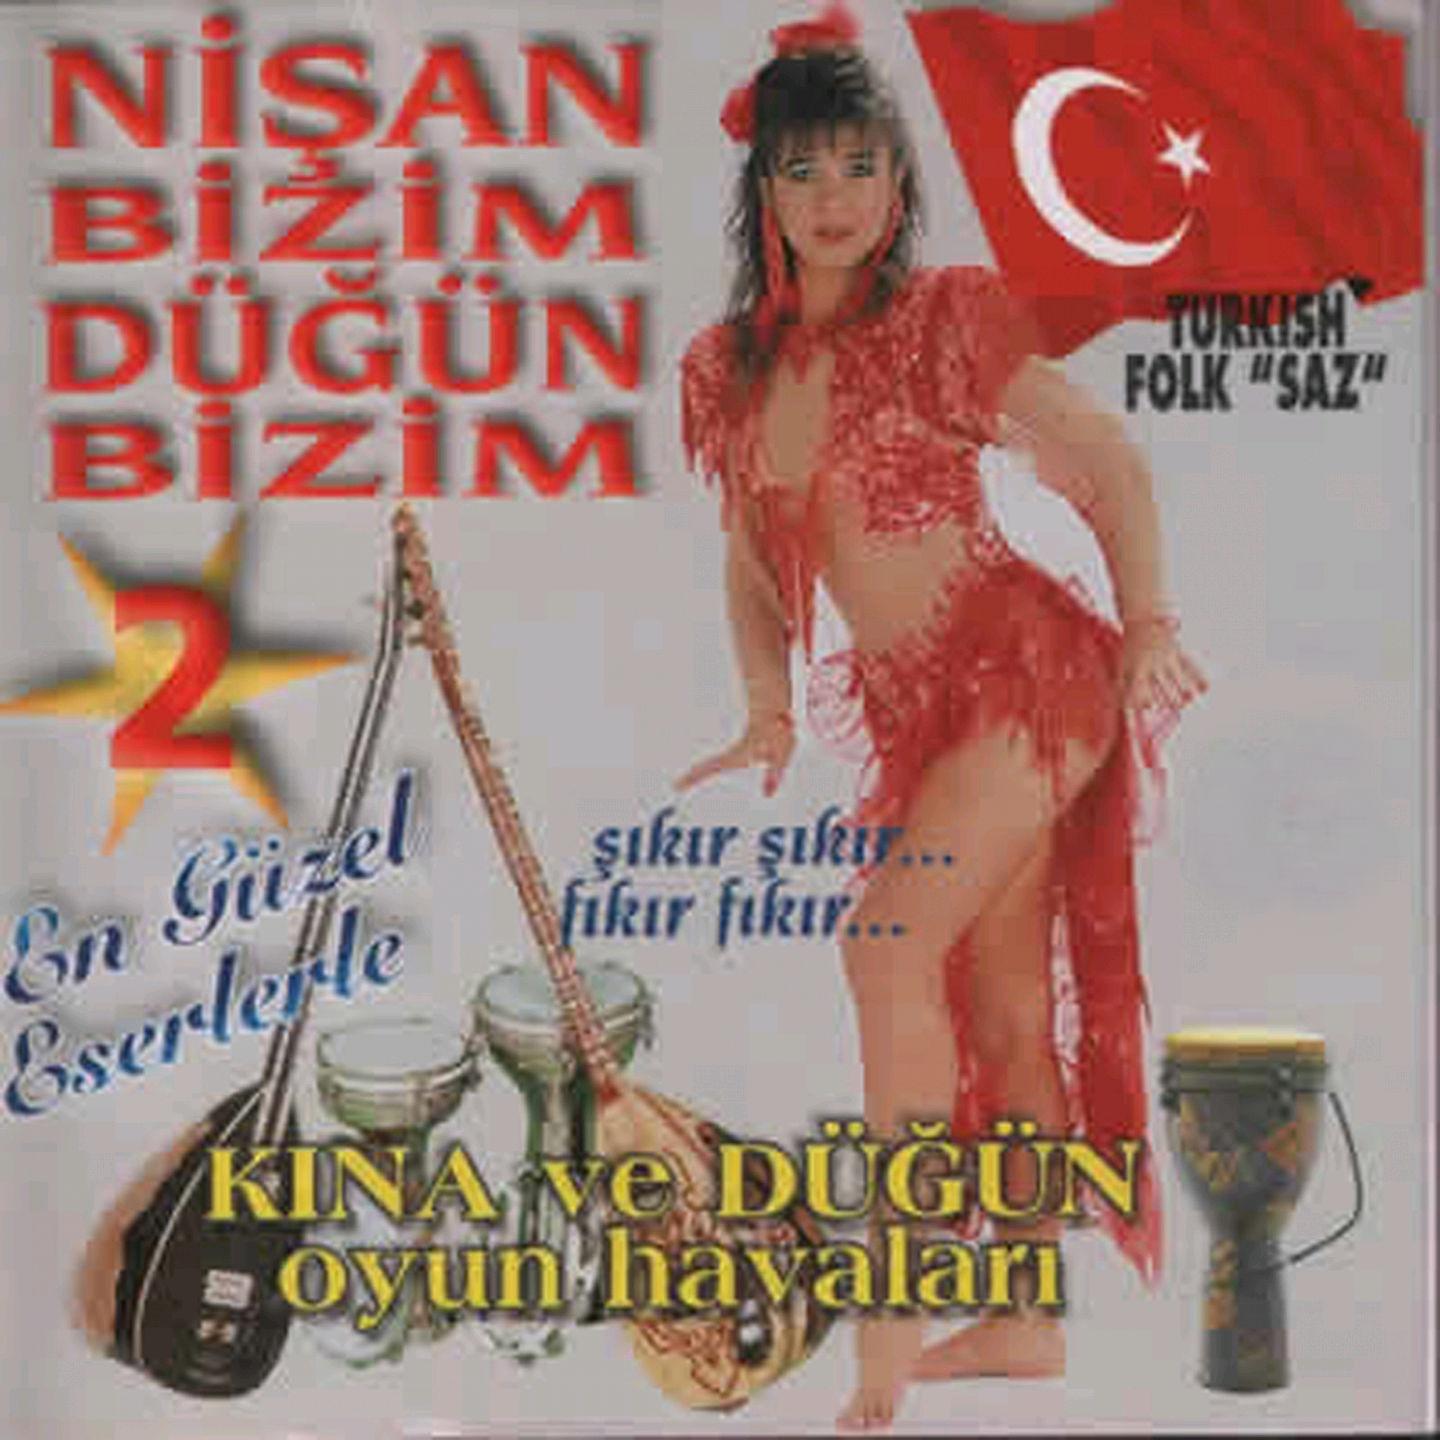 Постер альбома Nişan Bizim Düğün Bizim, Vol. 2